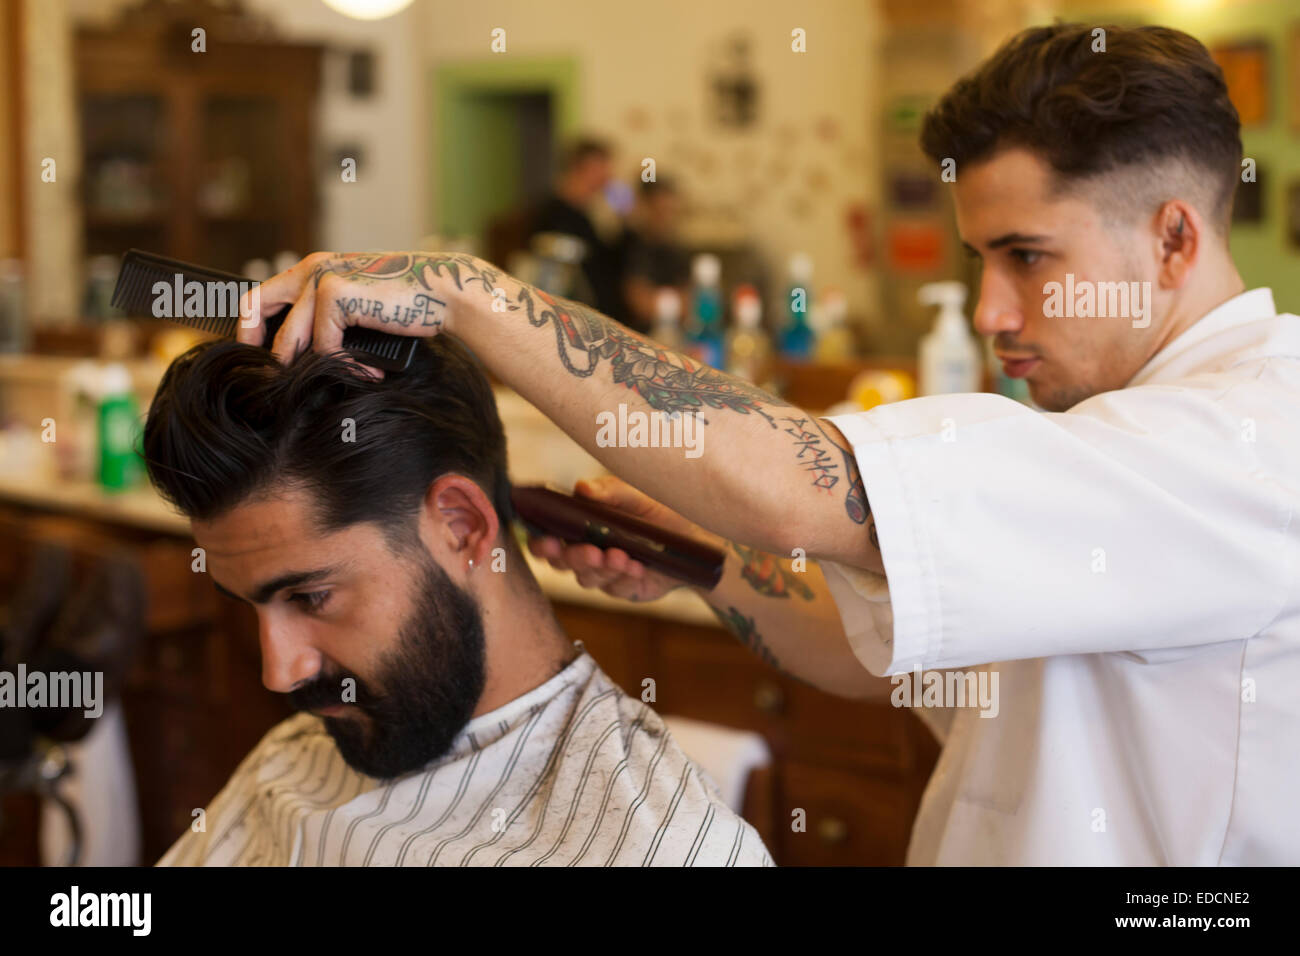 Figaro S Barbershop Barbershop Manner Nur Spezialisiert Auf Klassische Haarschnitte Von 1920 Bis 1950 Und Warmes Handtuch Rasiermesser Rasiert In Lissabon Portugal Stockfotografie Alamy